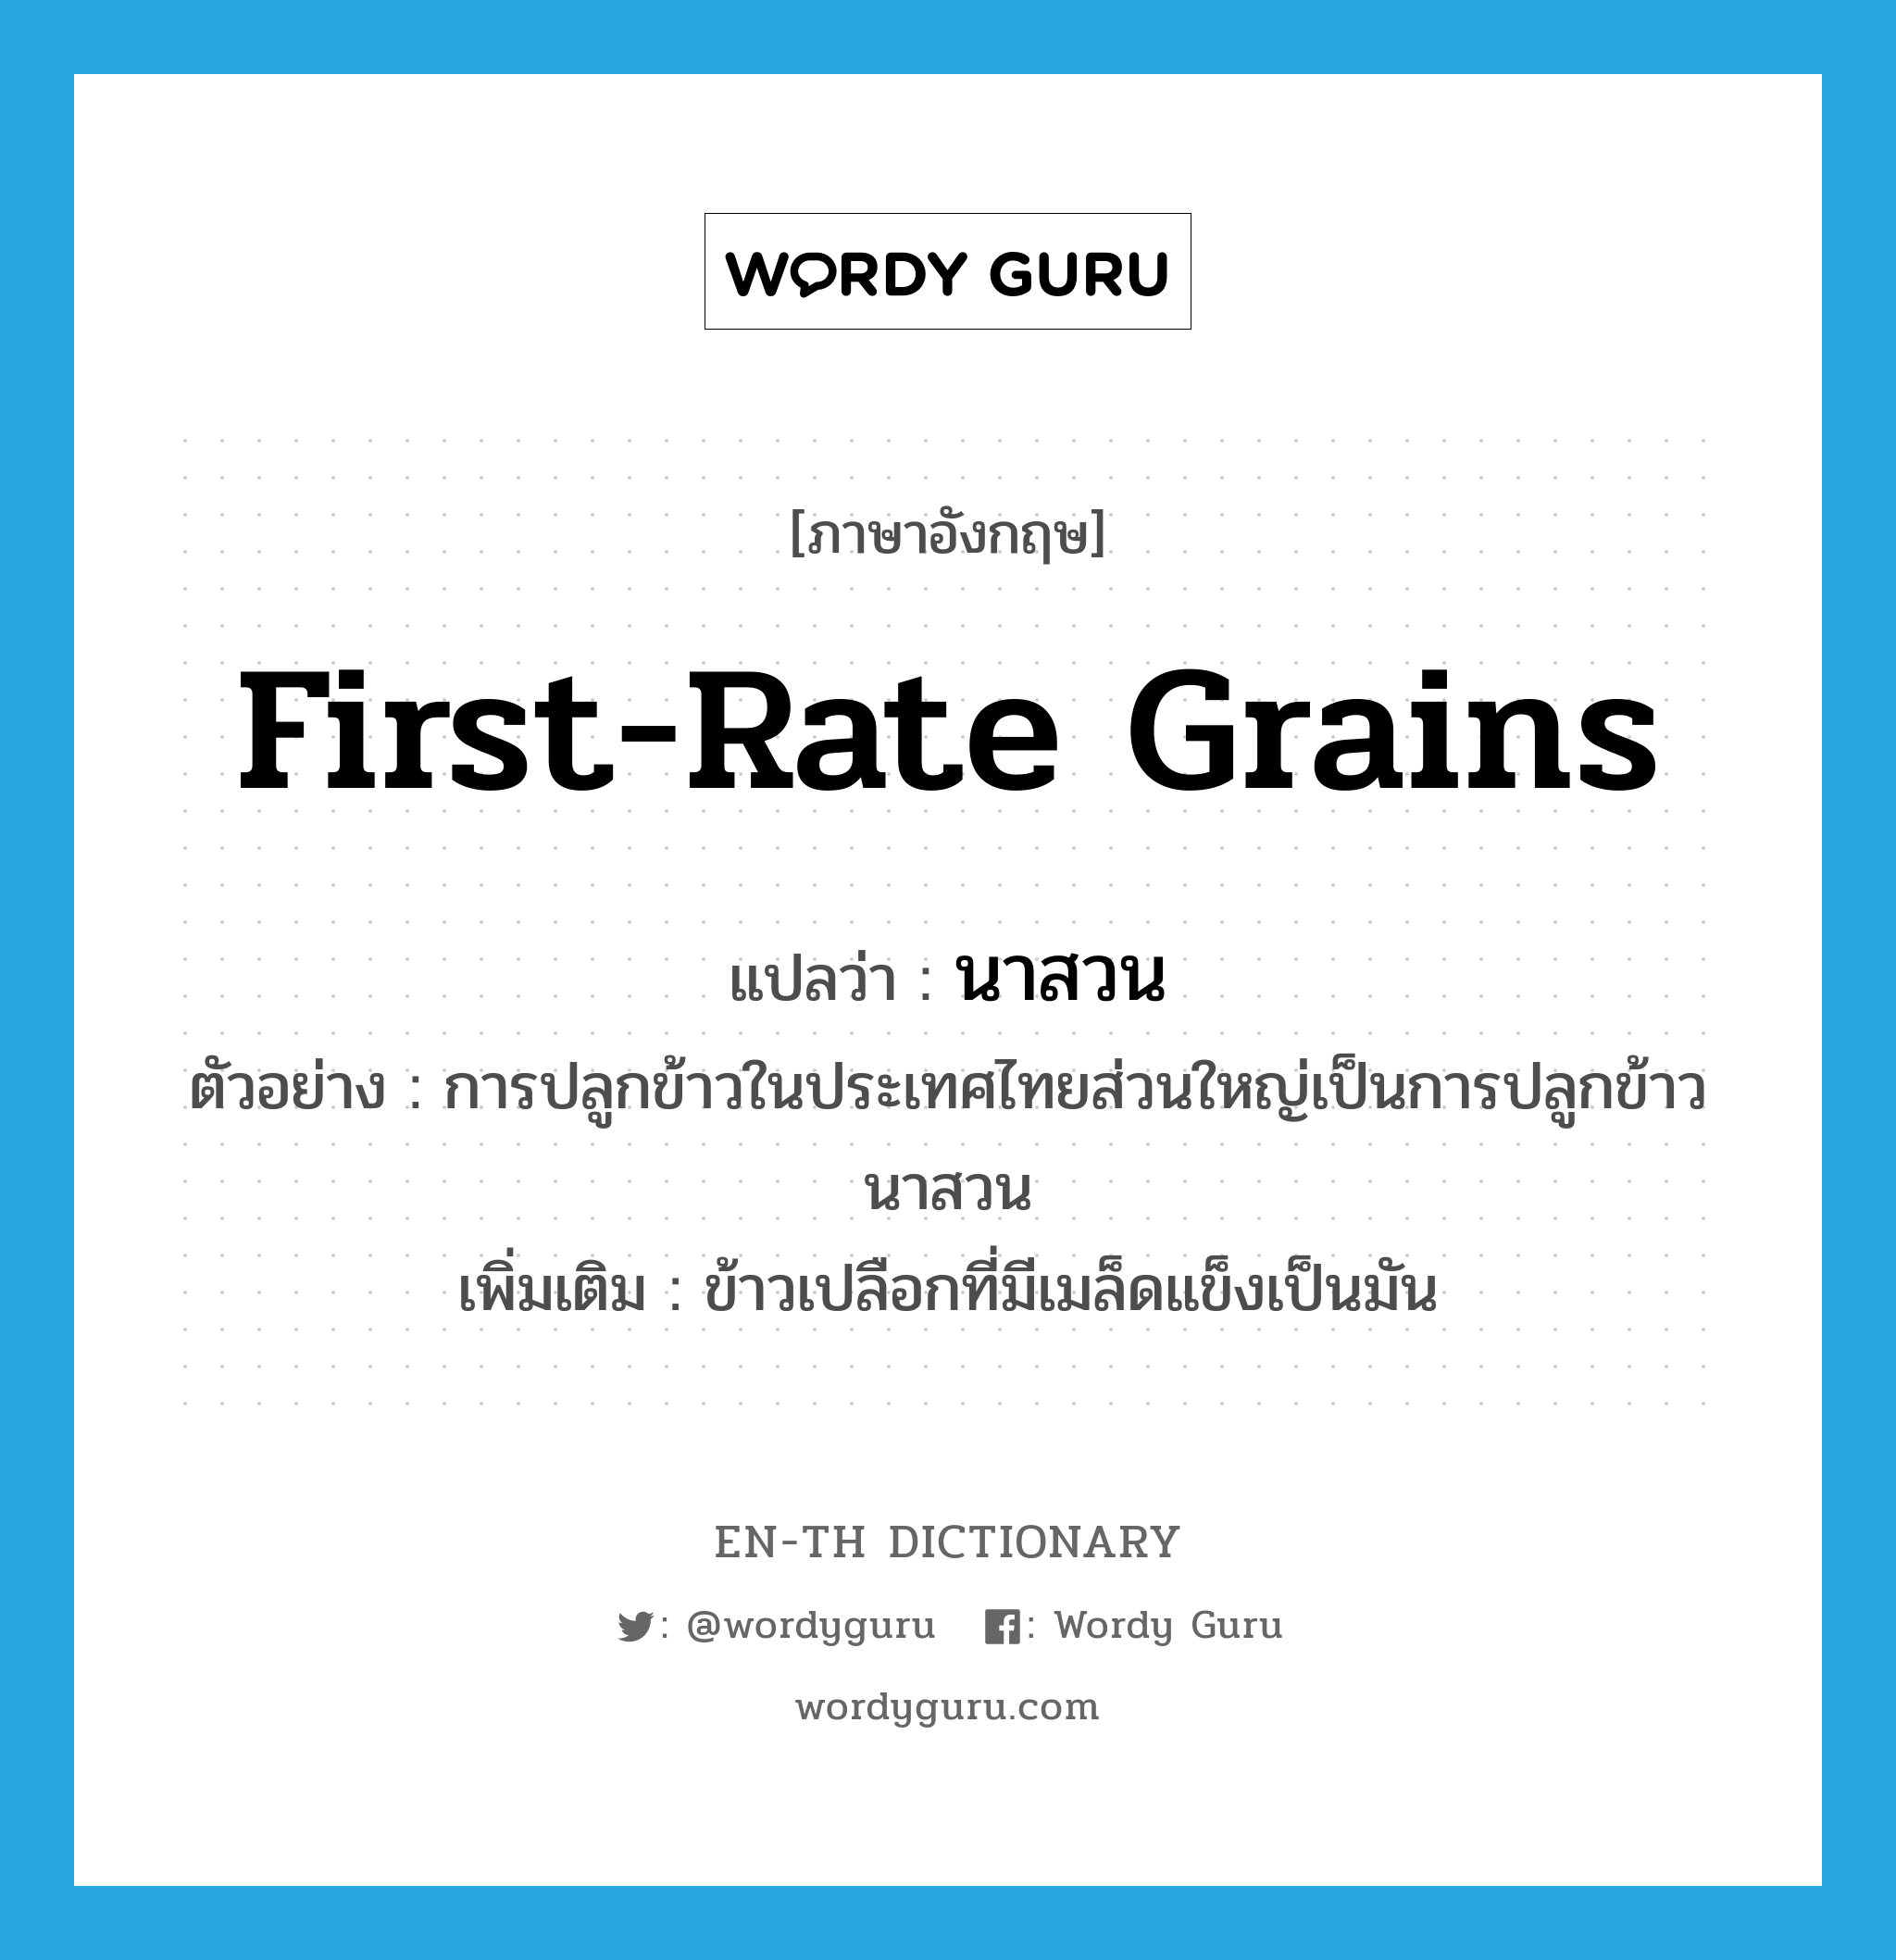 first-rate grains แปลว่า?, คำศัพท์ภาษาอังกฤษ first-rate grains แปลว่า นาสวน ประเภท N ตัวอย่าง การปลูกข้าวในประเทศไทยส่วนใหญ่เป็นการปลูกข้าวนาสวน เพิ่มเติม ข้าวเปลือกที่มีเมล็ดแข็งเป็นมัน หมวด N